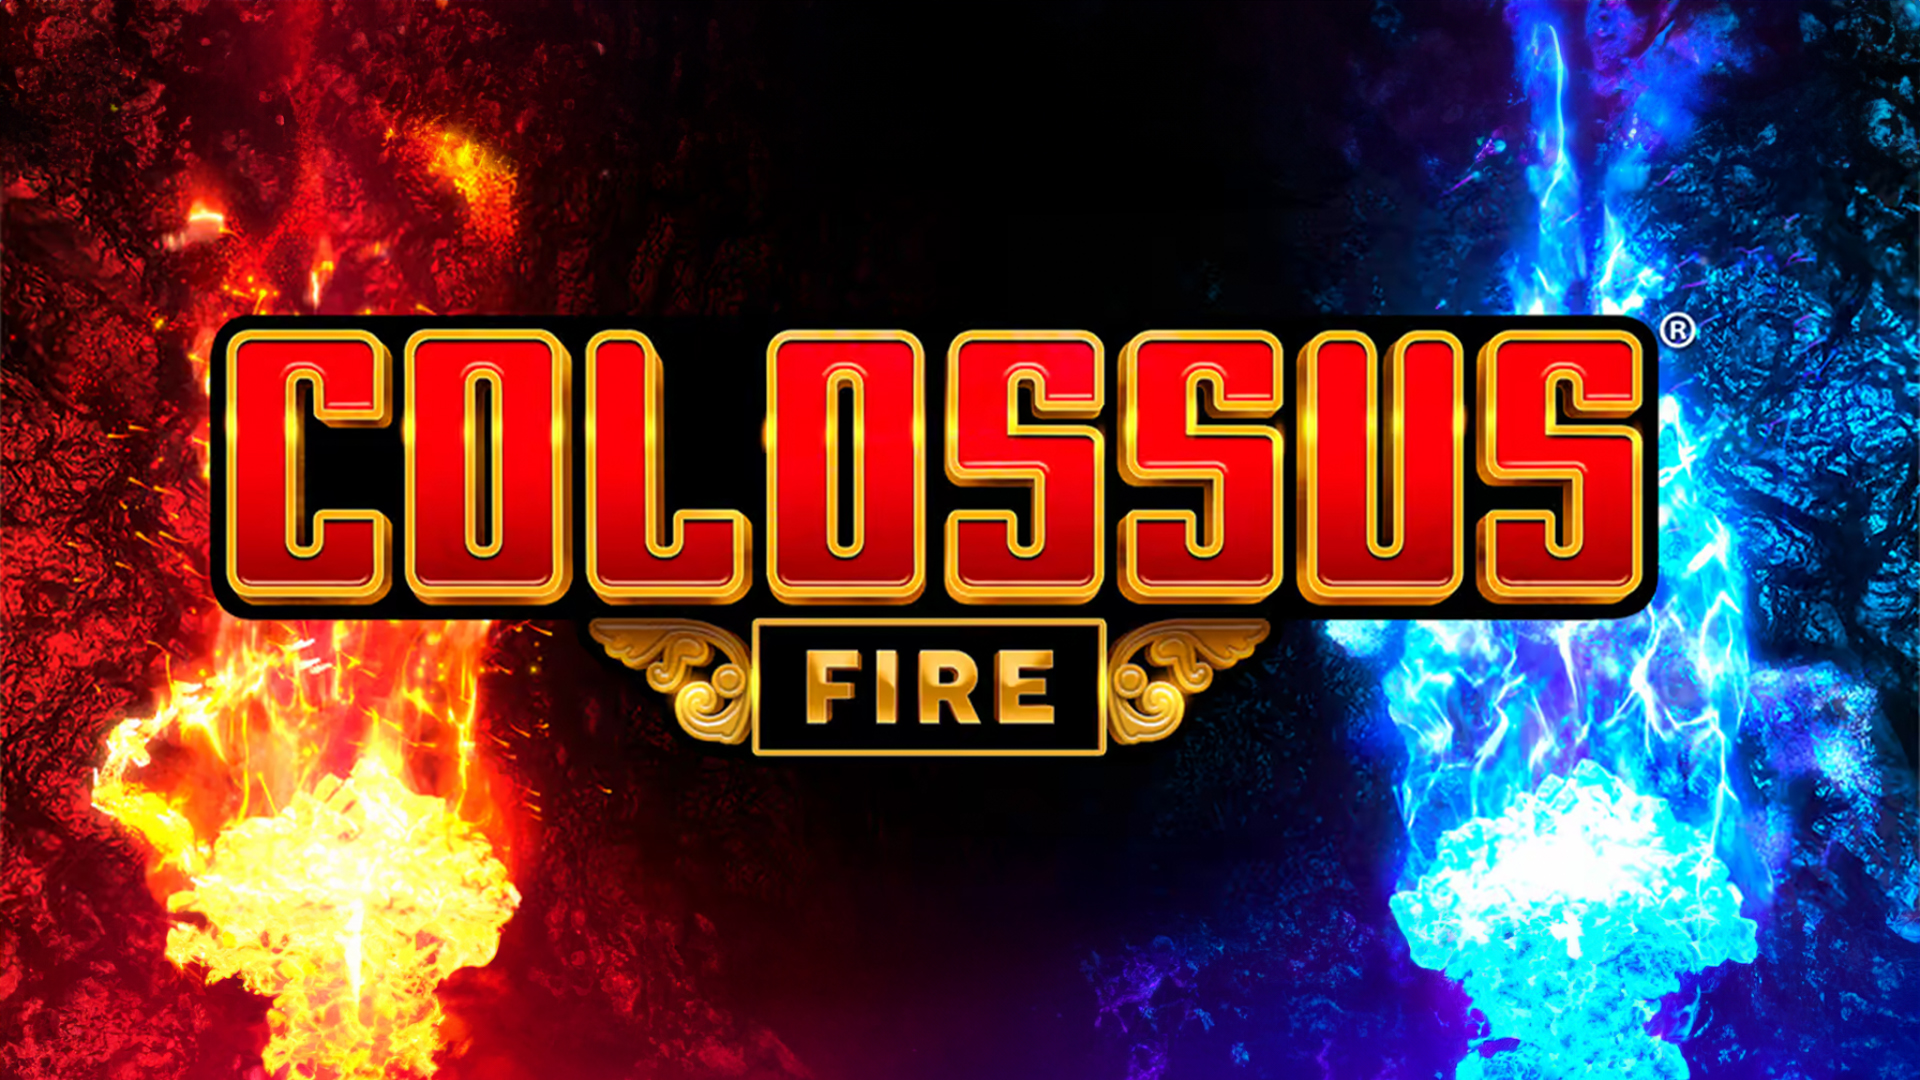 Colossus Fire